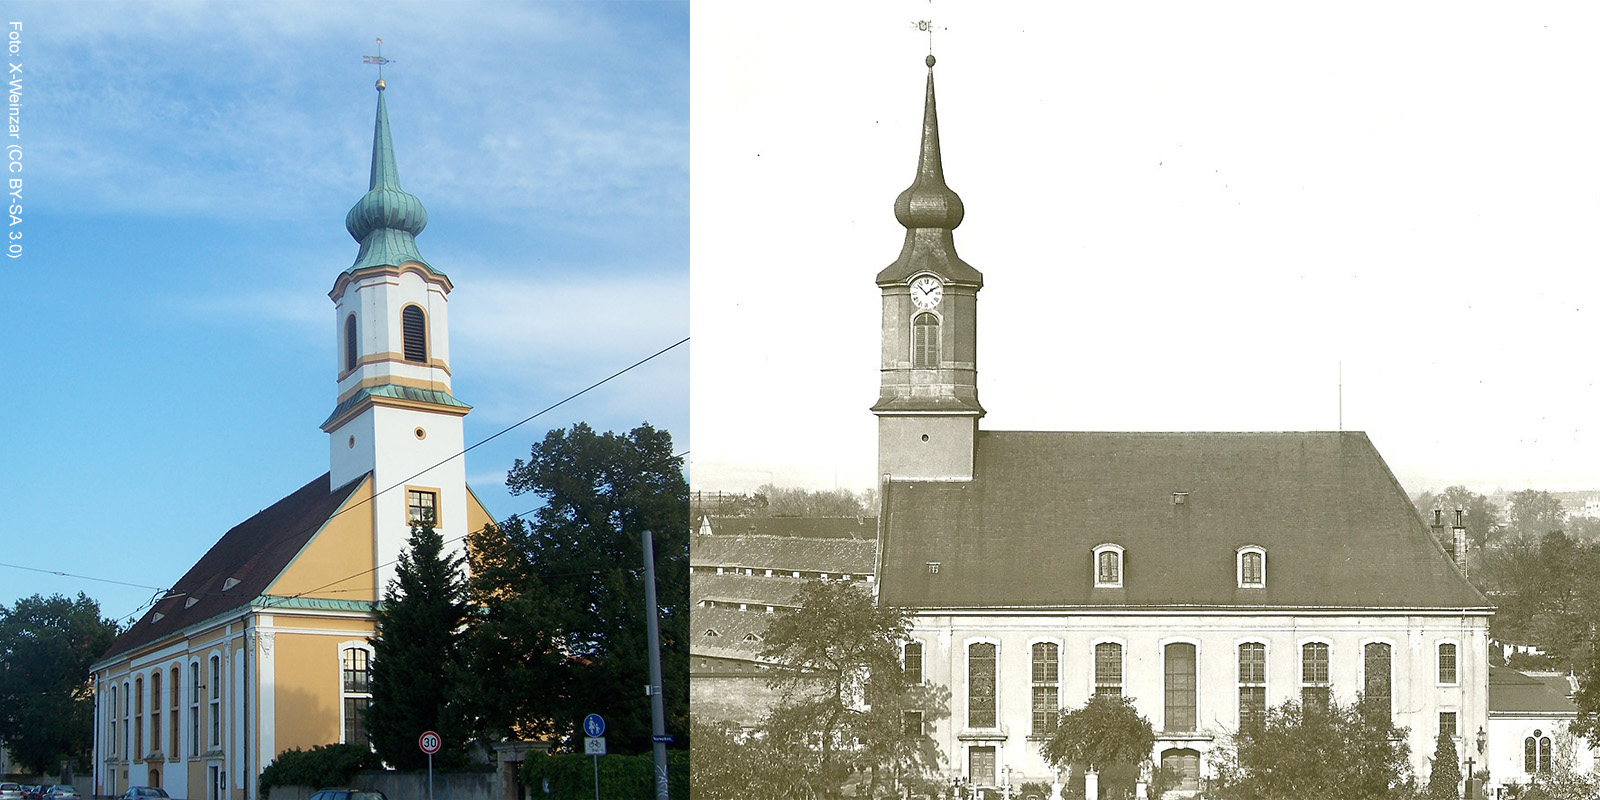 Historische und aktuelle Matthäuskirche im Vergleich